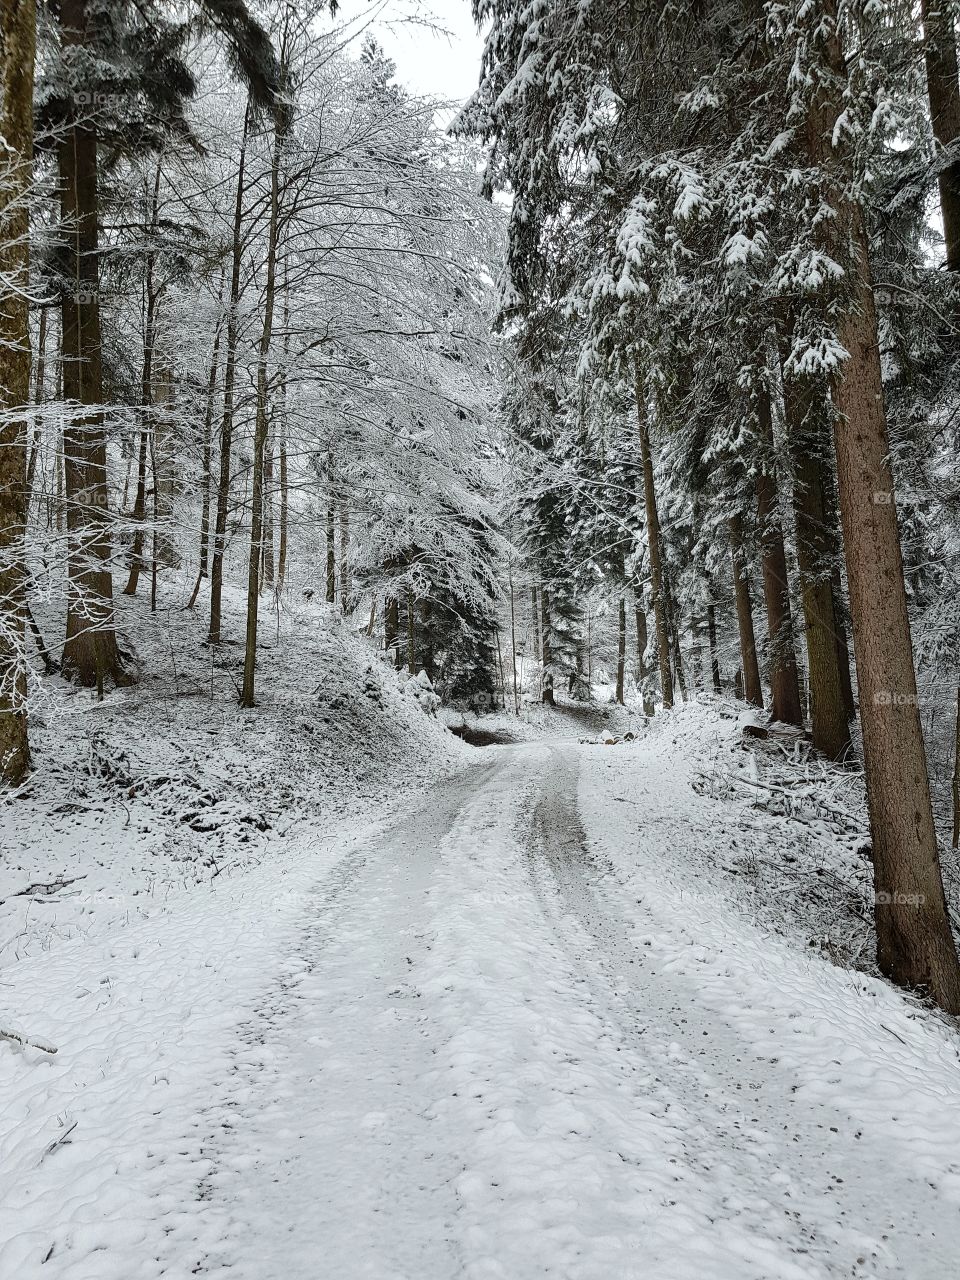 Winter landscape in Switzerland. Winterlandschaft in der Schweiz.